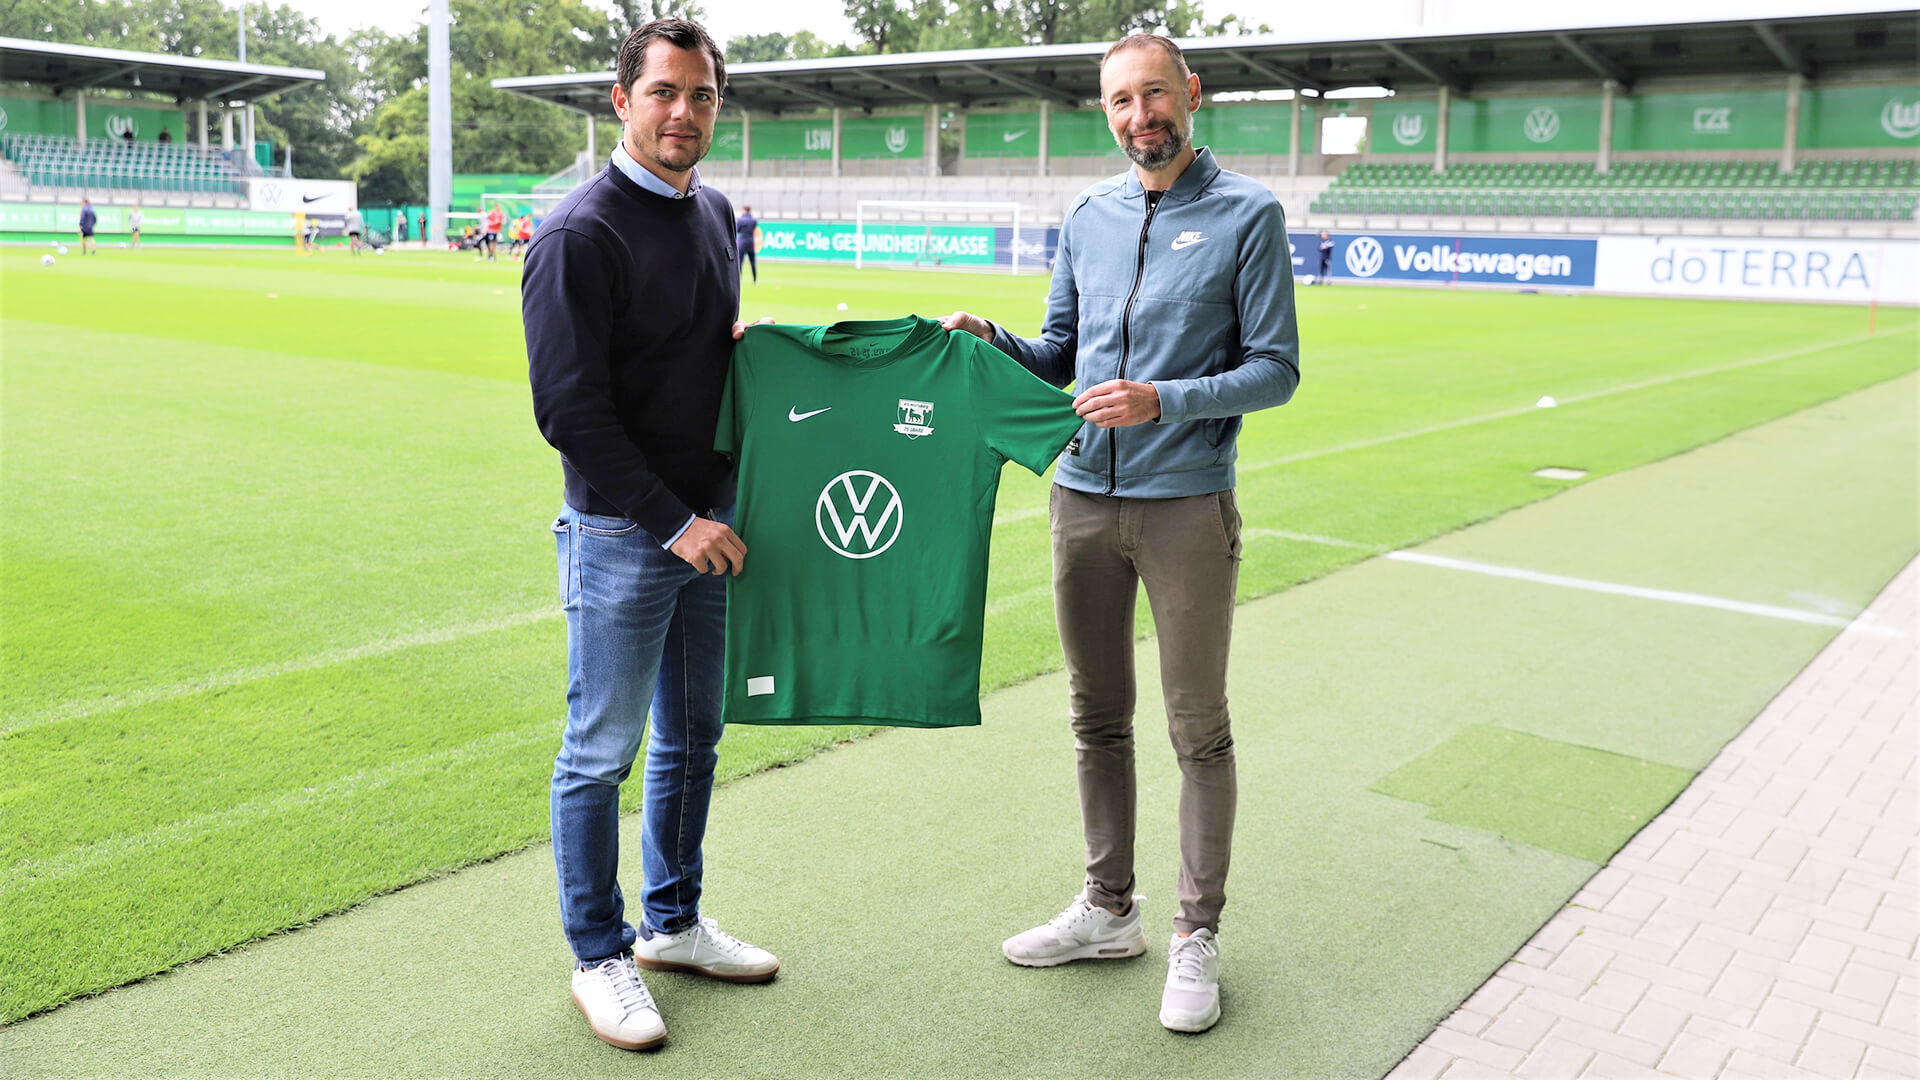 Marcel Schäfer Vom Bundesligisten VfL Wolfsburg und Stephan Ehlers vom Gesamtverein VfL Wolfsburg halten das Jubiläumstrikot zum 75-jährigen Bestehen in den Händen und präsentieren dieses den Medienvertretern.